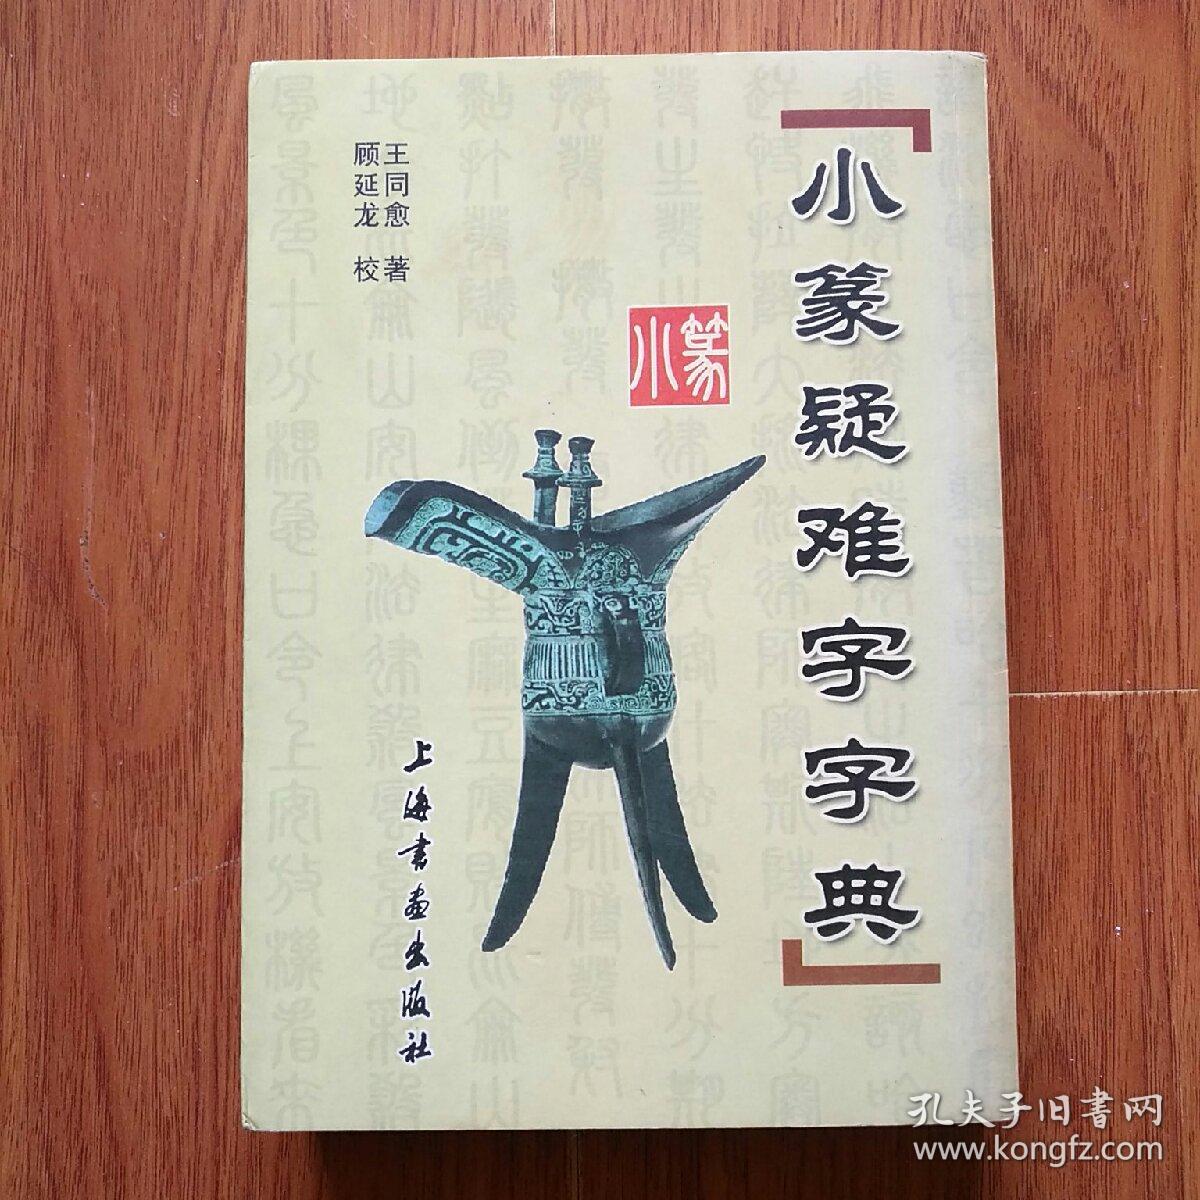 小篆疑难字字典,上海书画出版社